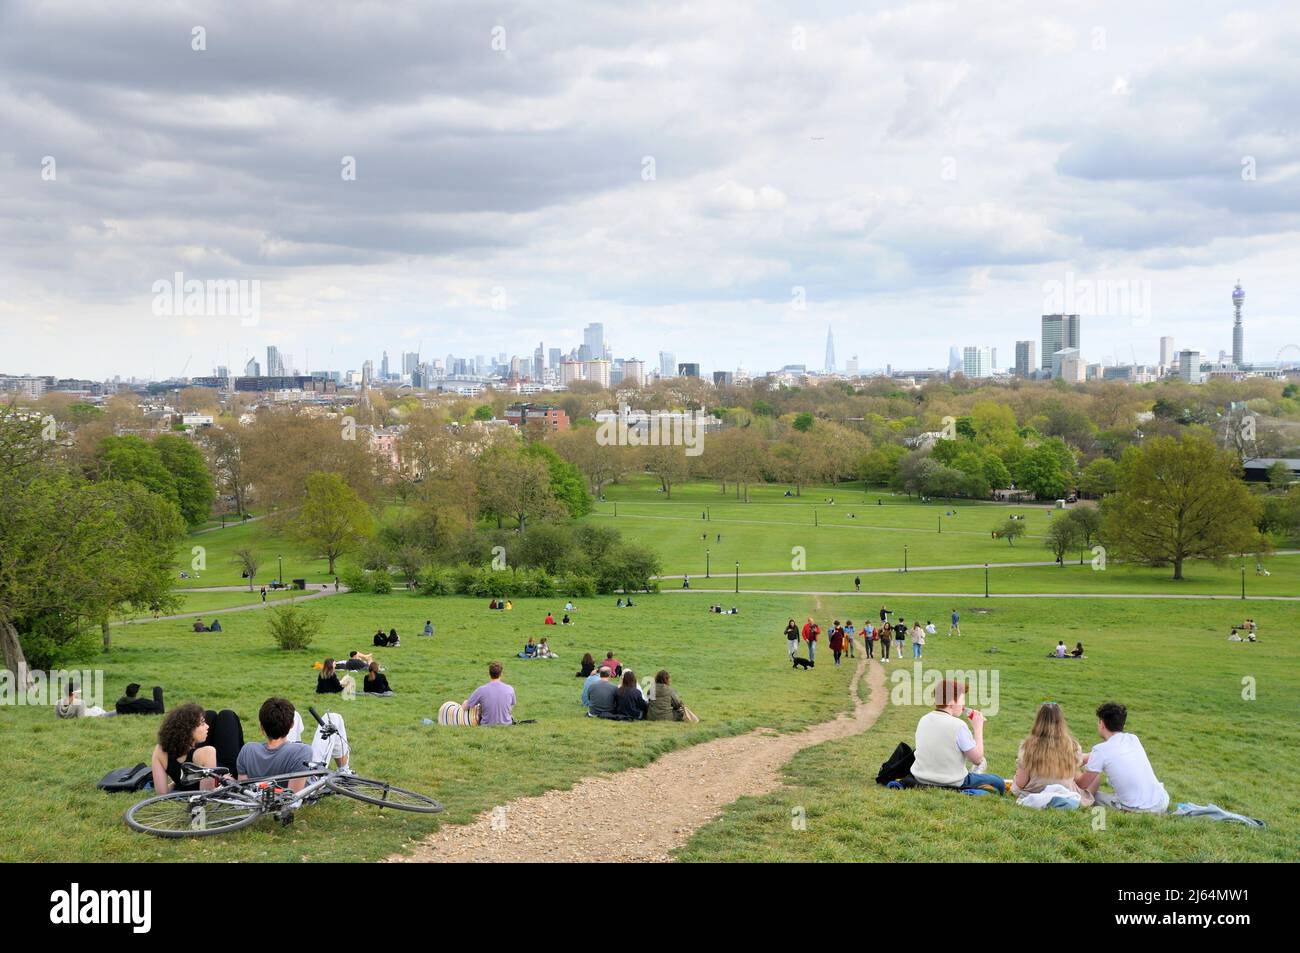 Les gens se détendent sur les pentes herbeuses du parc Primrose Hill avec une vue imprenable sur les célèbres bâtiments de Londres, dans le nord de Londres, en Angleterre Banque D'Images